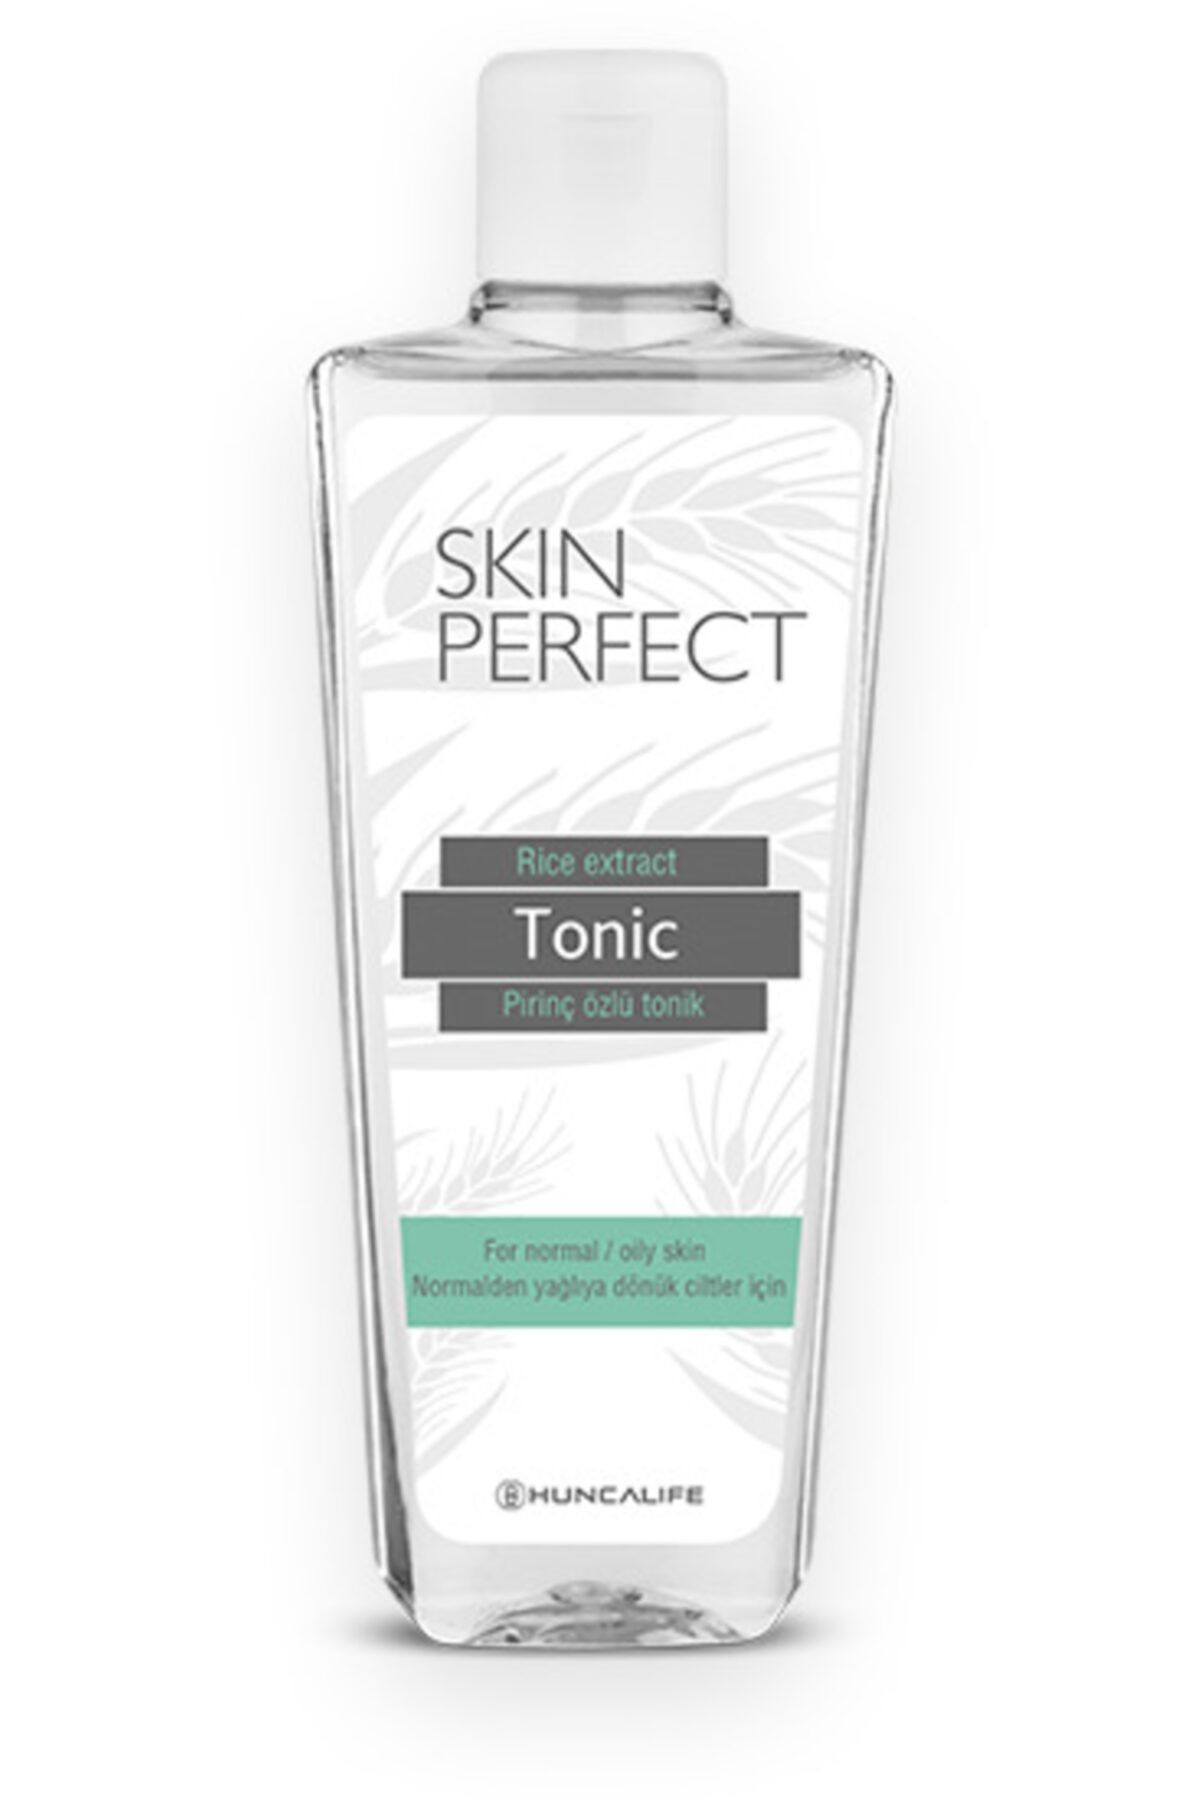 Huncalife Skin Perfect Pirinç Özlü Aydınlatıcı Tonik 200 ml